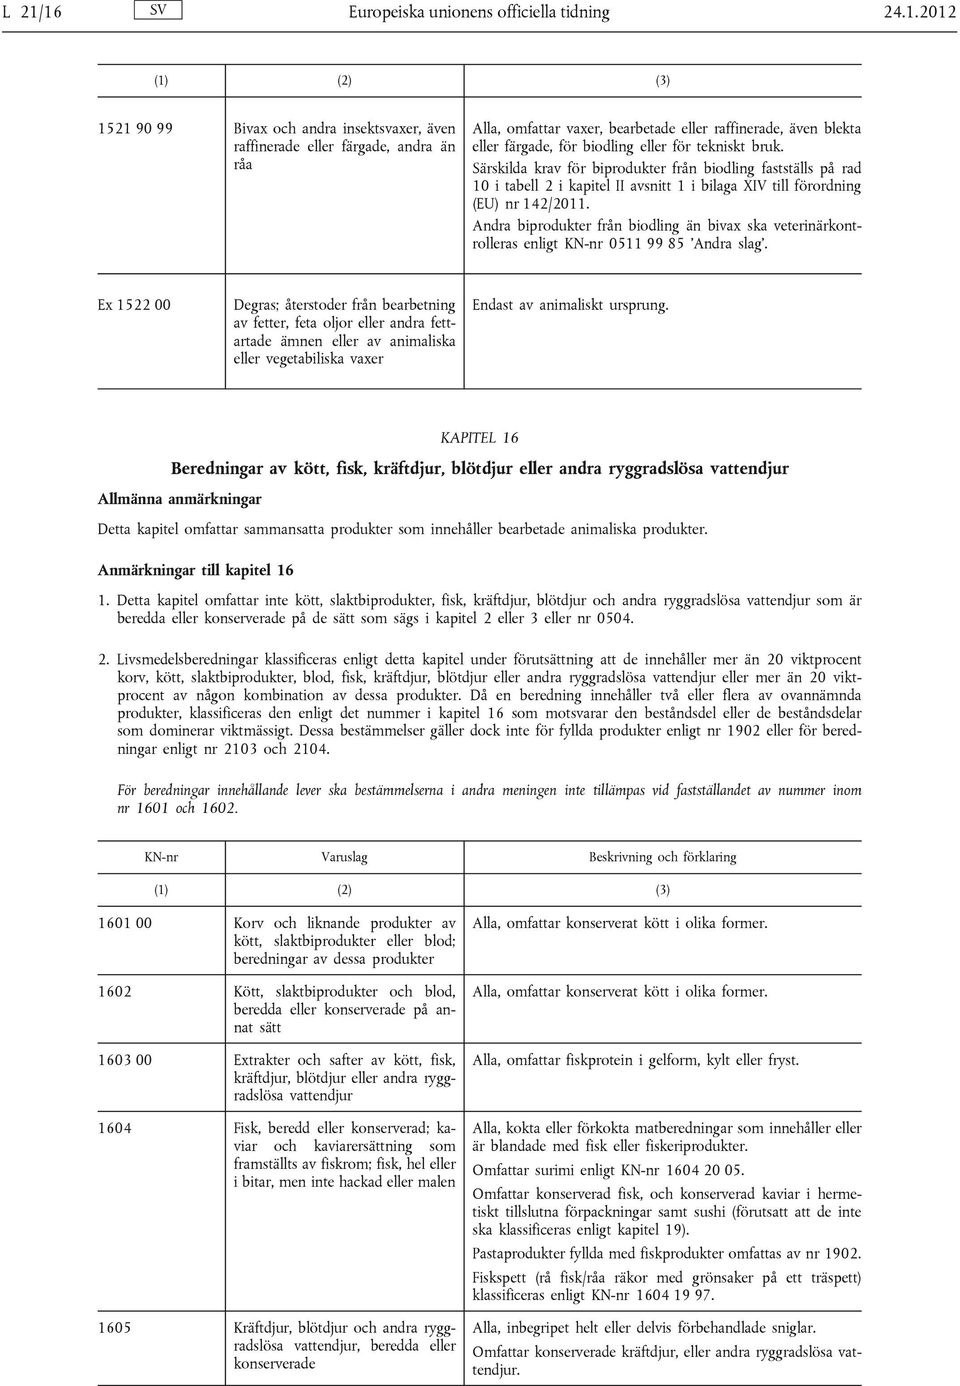 Särskilda krav för biprodukter från biodling fastställs på rad 10 i tabell 2 i kapitel II avsnitt 1 i bilaga XIV till förordning (EU) nr 142/2011.